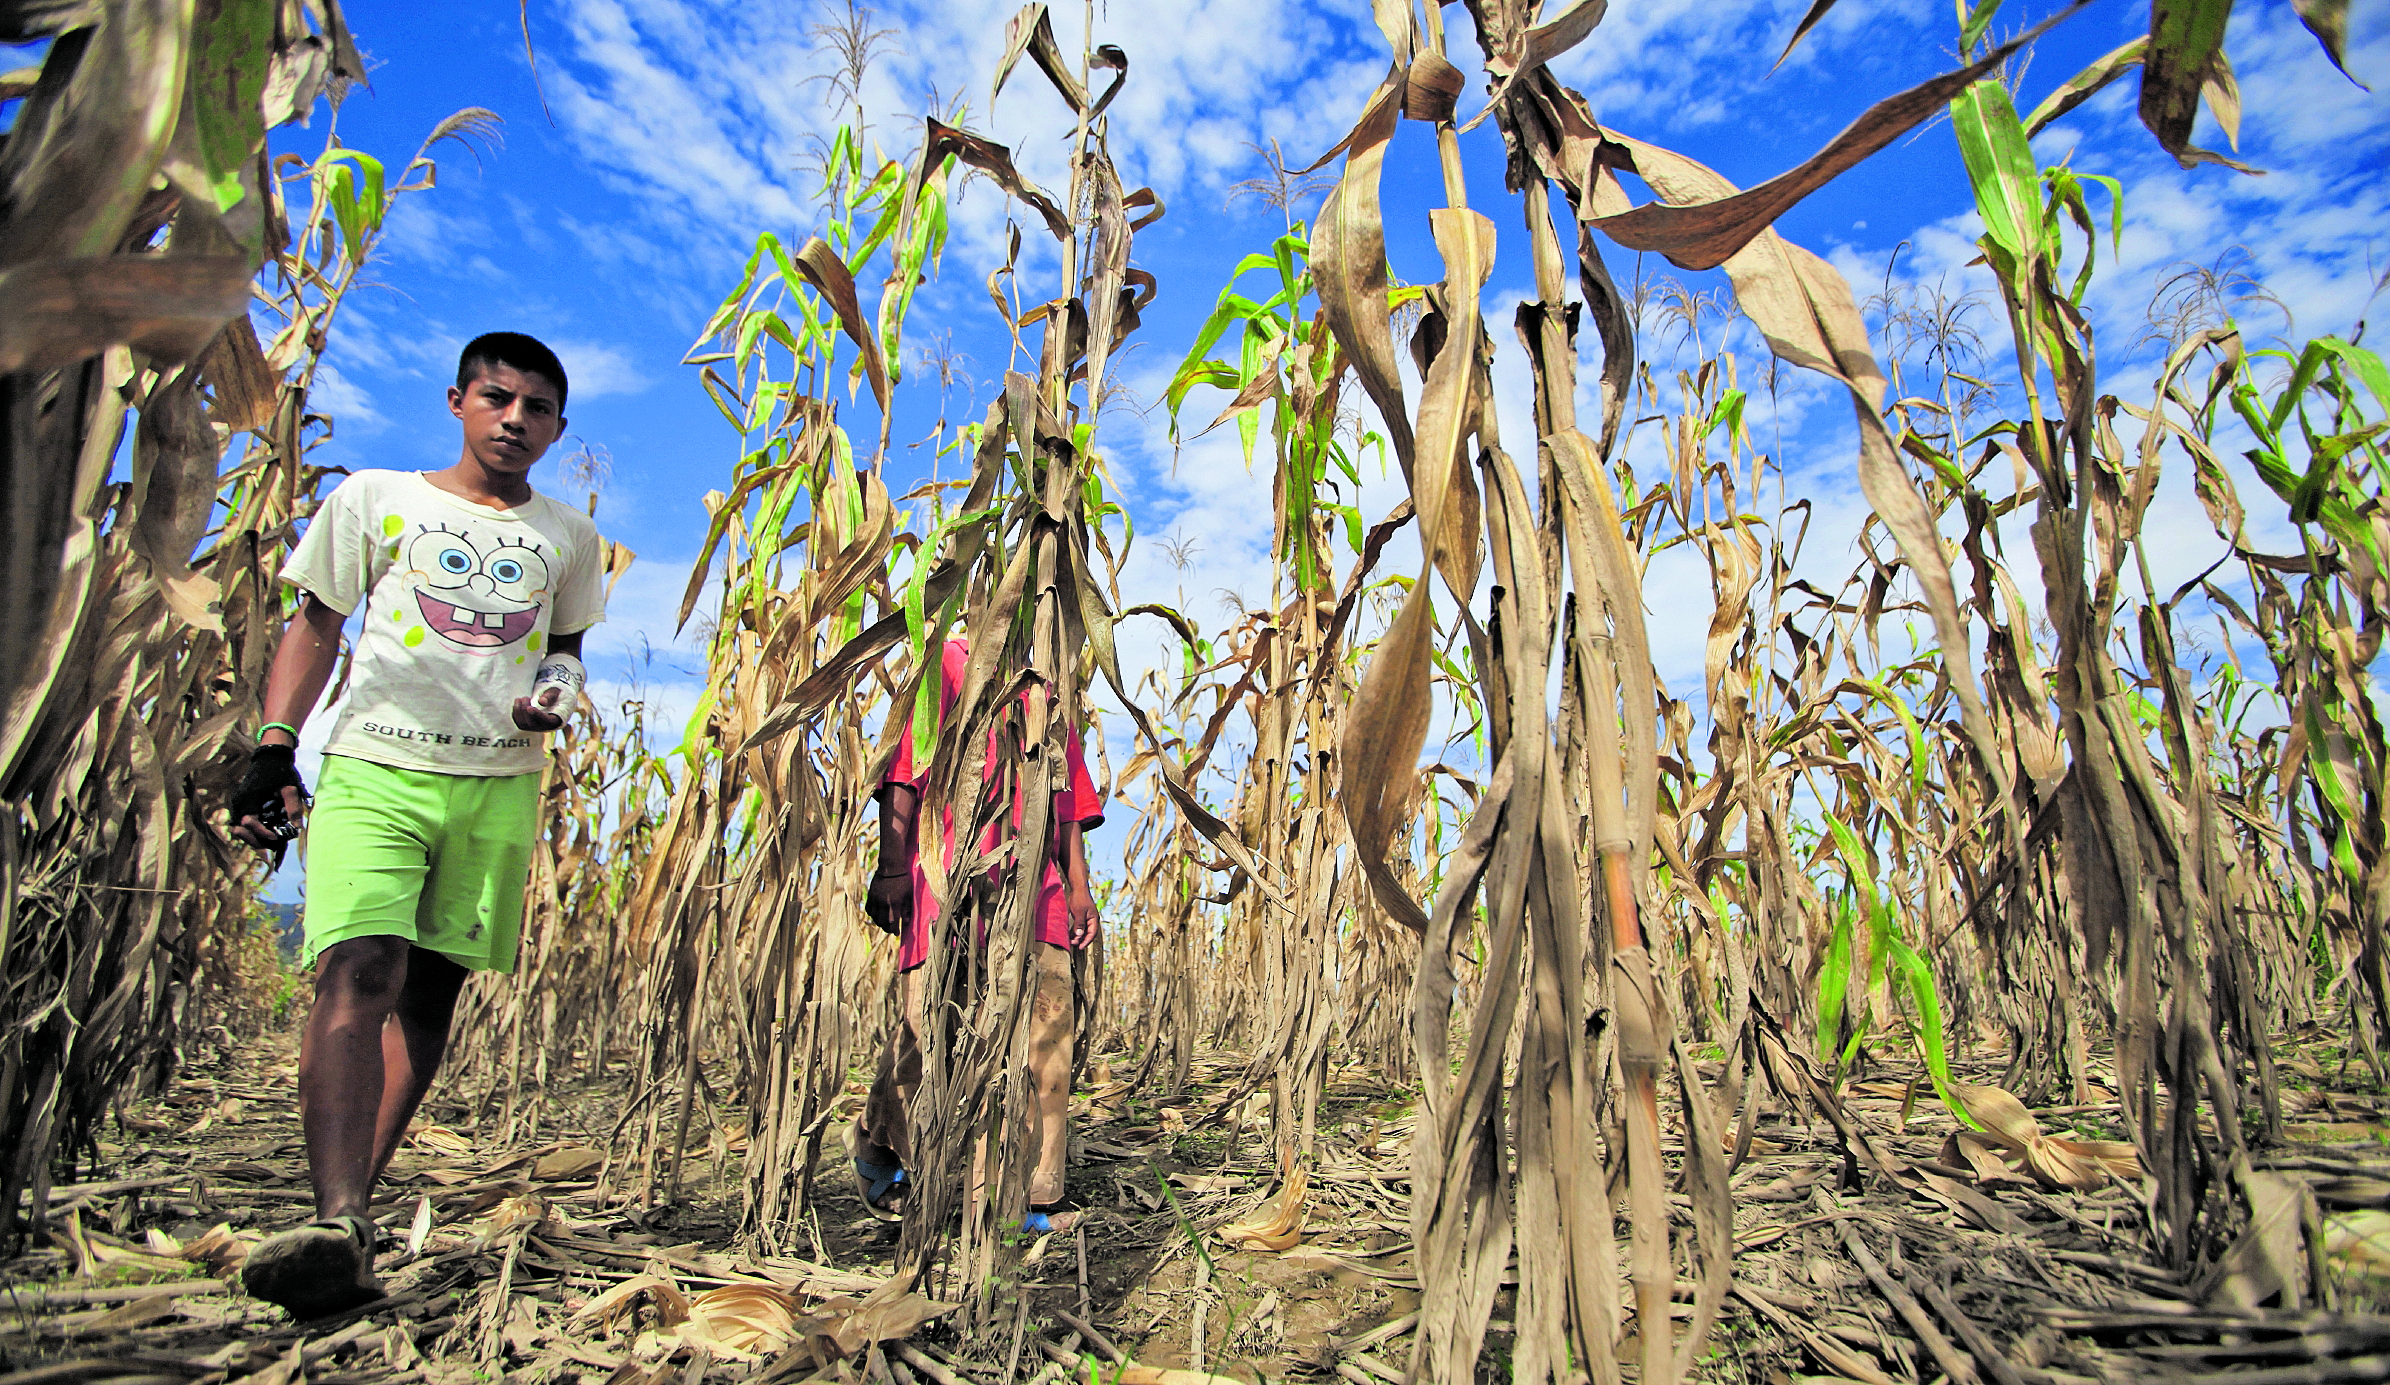 Con la aparición del fenómeno del Niño las lluvias serán menos y afectará los cultivos. (Foto Prensa Libre: Hemeroteca PL)